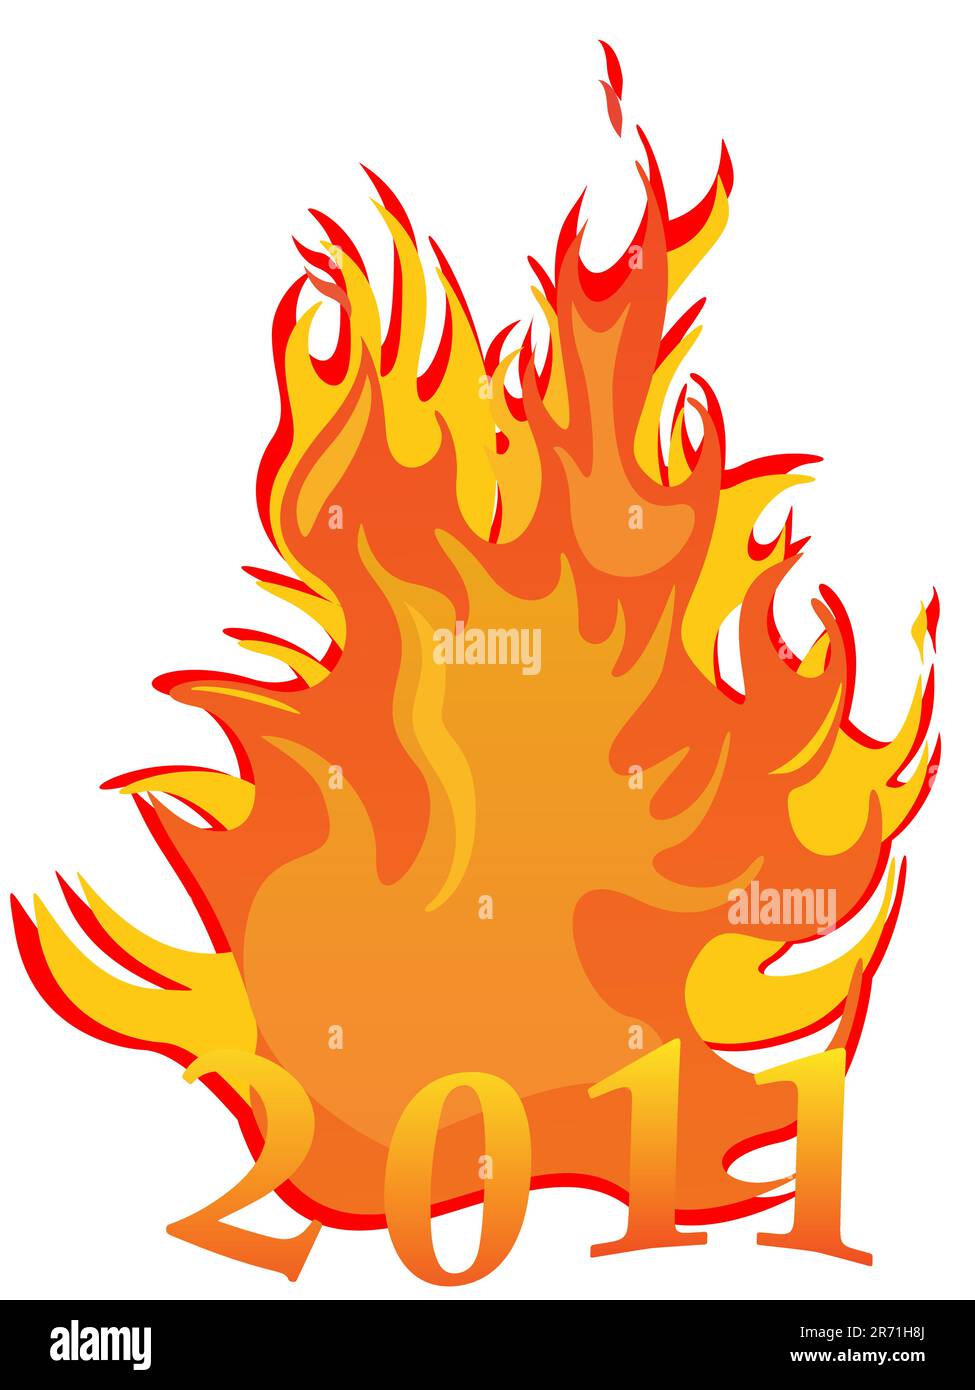 immagine vector eps 10 con numeri davanti a un incendio che brucia a caldo Illustrazione Vettoriale